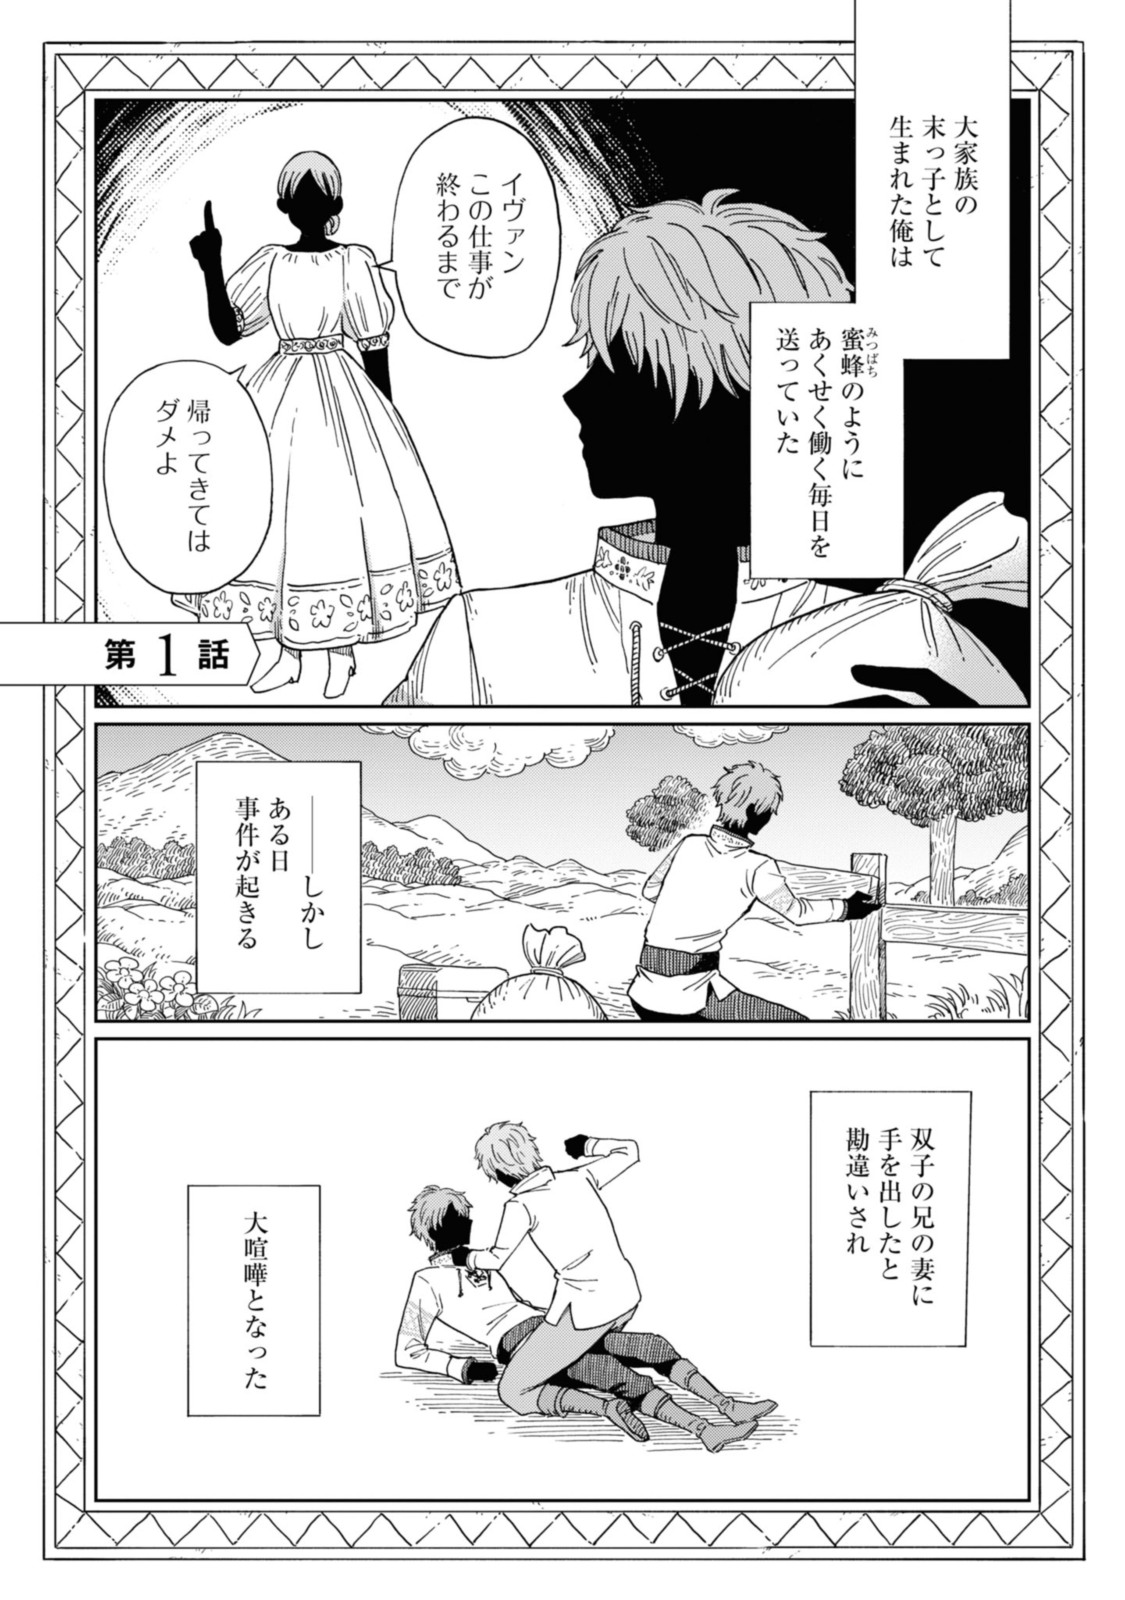 Youhou-ka to Mitsu Kusushi no Hanayome - Chapter 1.1 - Page 1